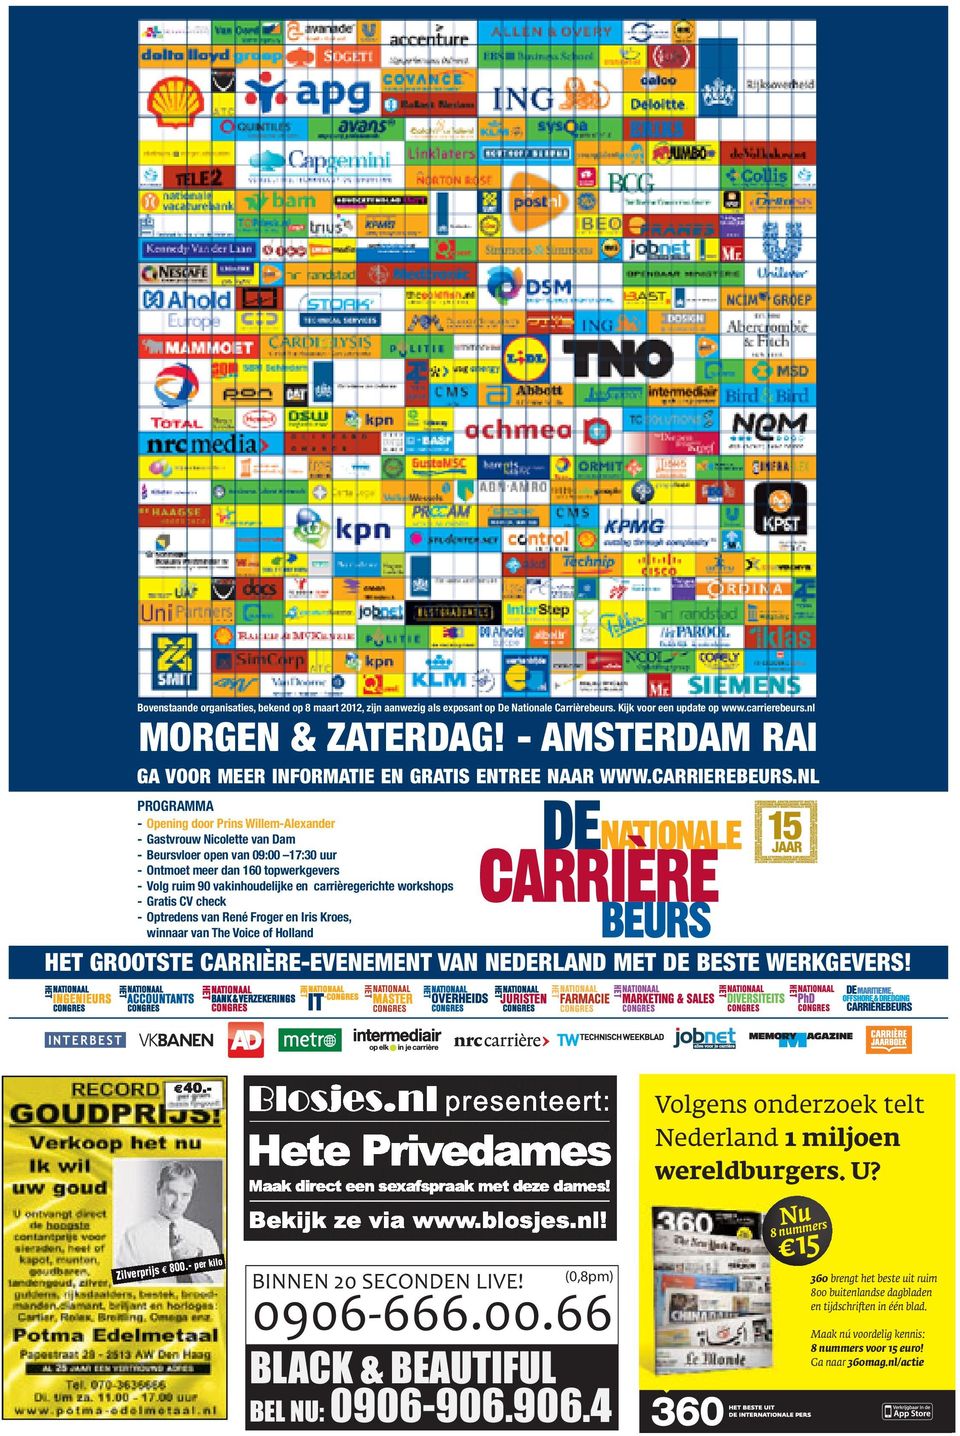 NL PROGRAMMA - Opening door Prins Willem-Alexander - Gastvrouw Nicolette van Dam - Beursvloer open van 09:00 17:30 uur - Ontmoet meer dan 160 topwerkgevers - Volg ruim 90 vakinhoudelijke en